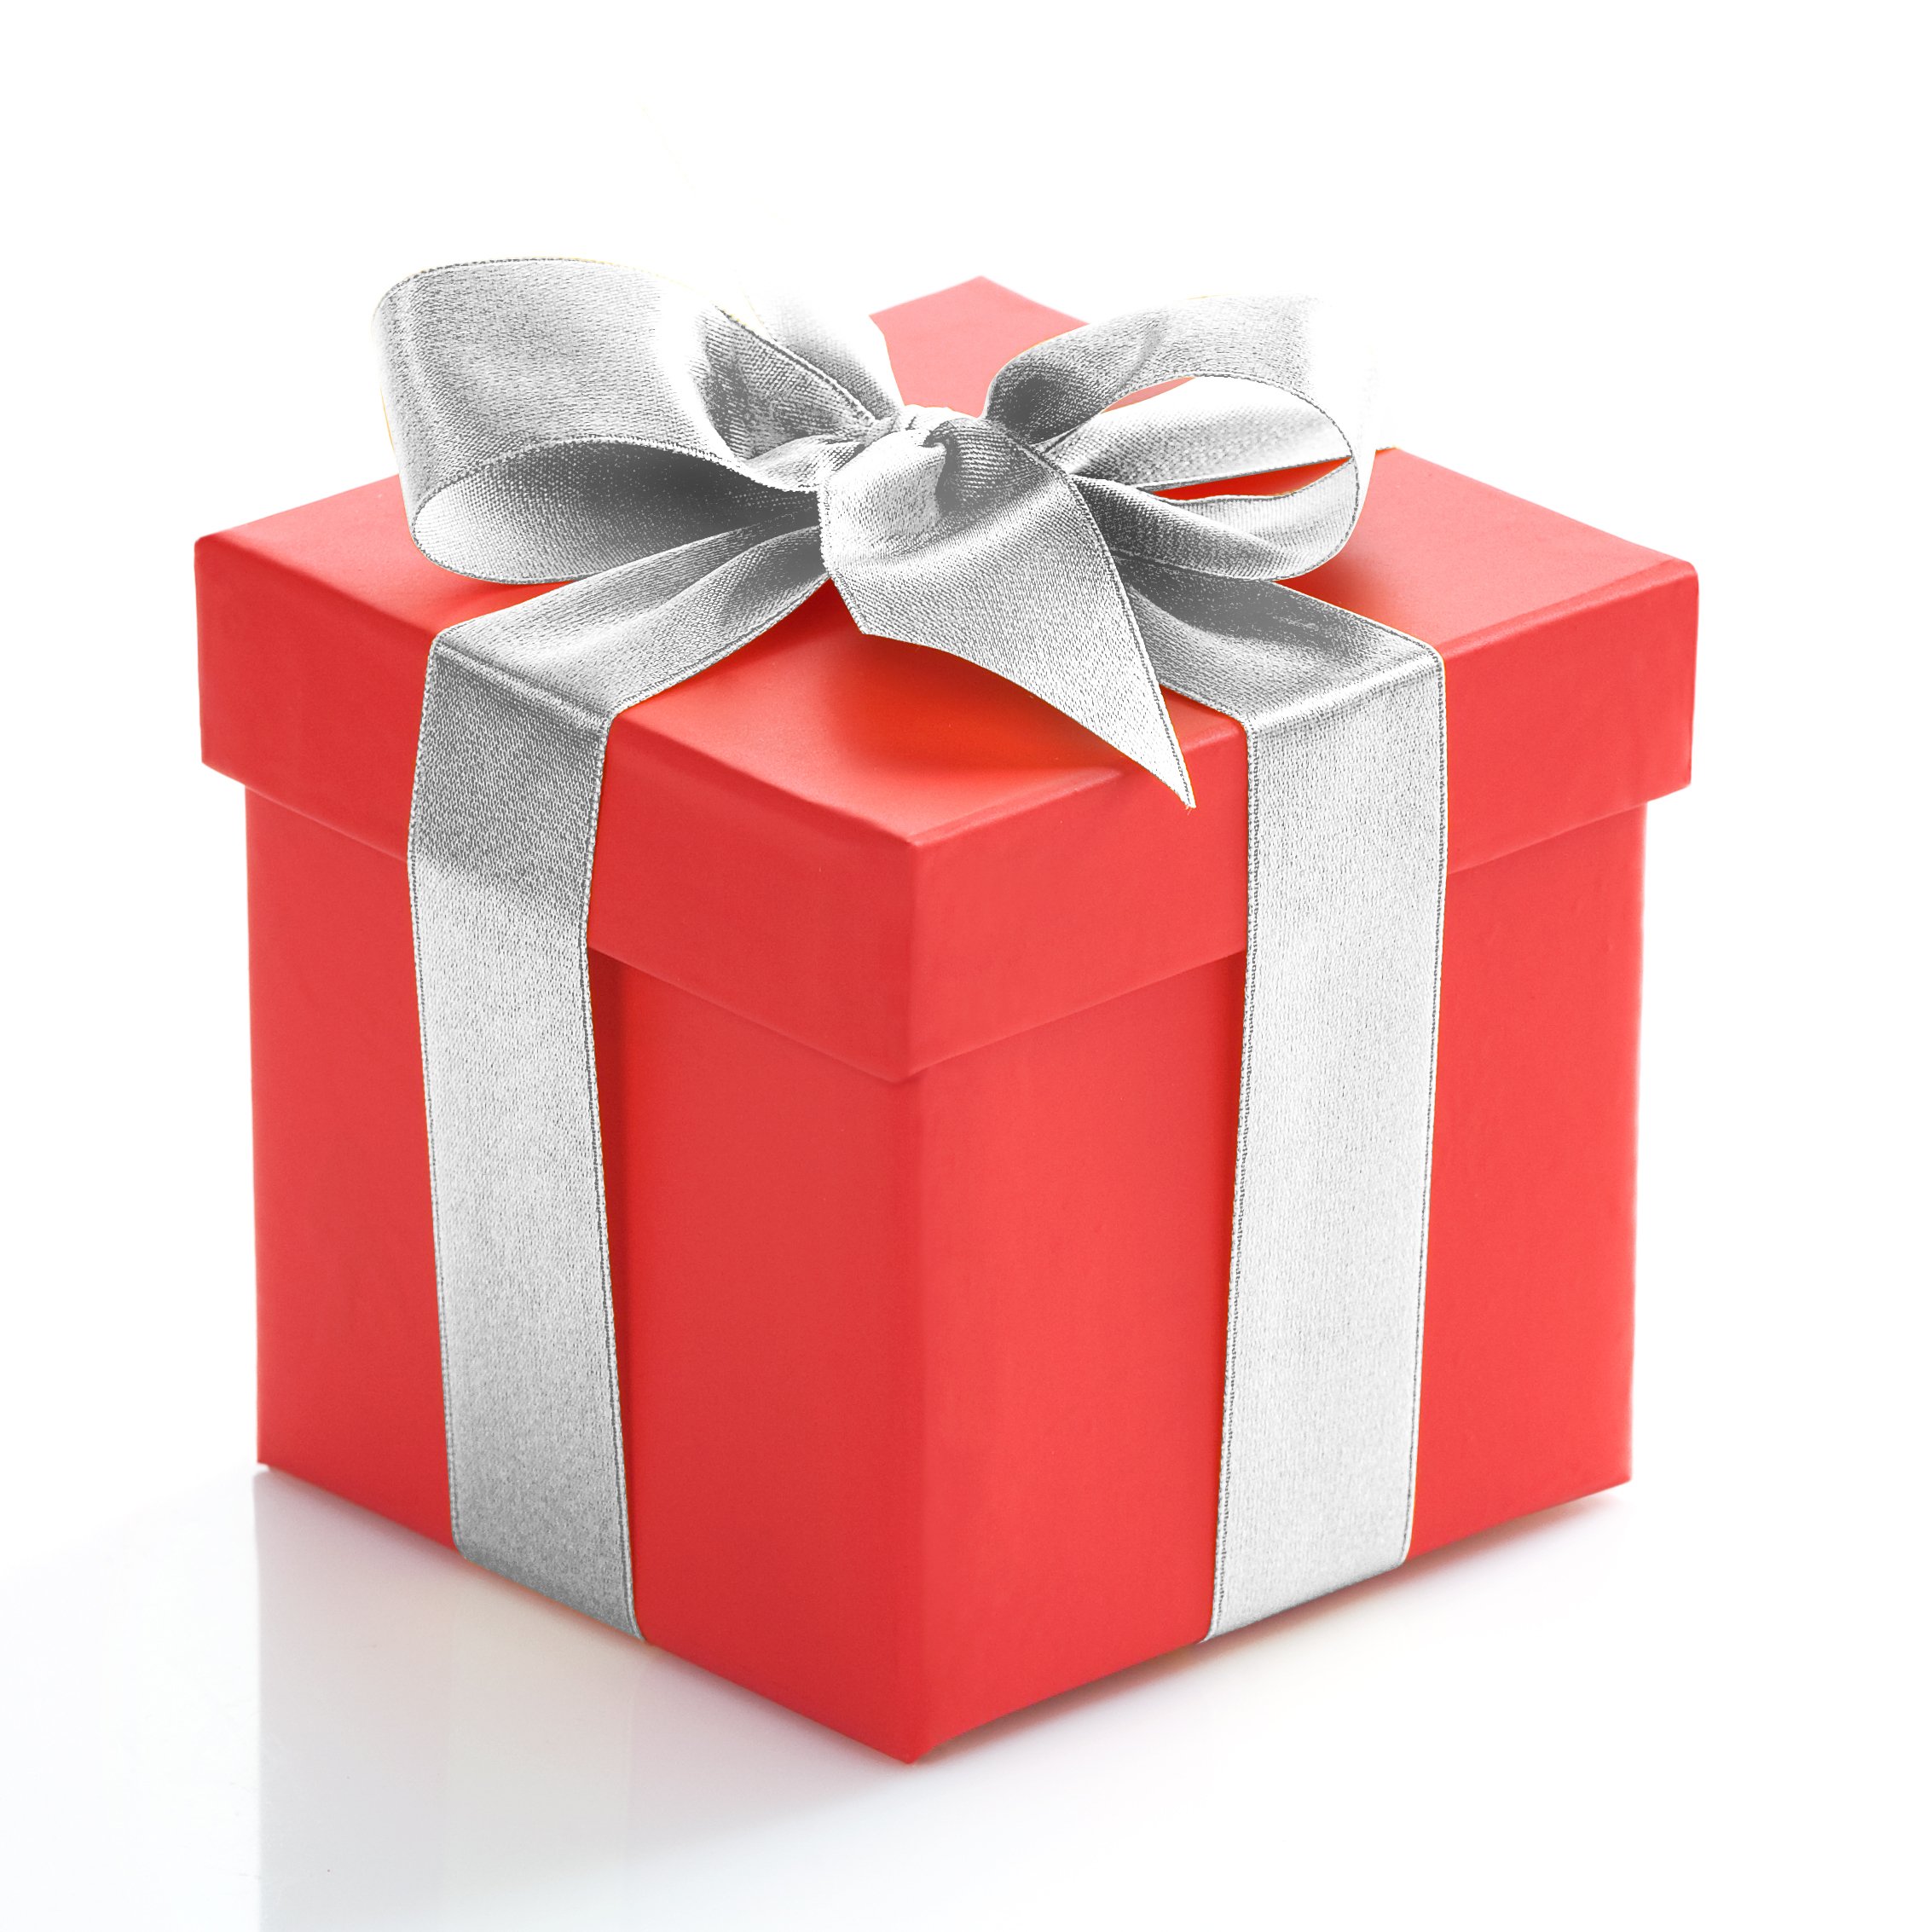 Danny Seo's Treat Your Happy Gift Box – Veestro